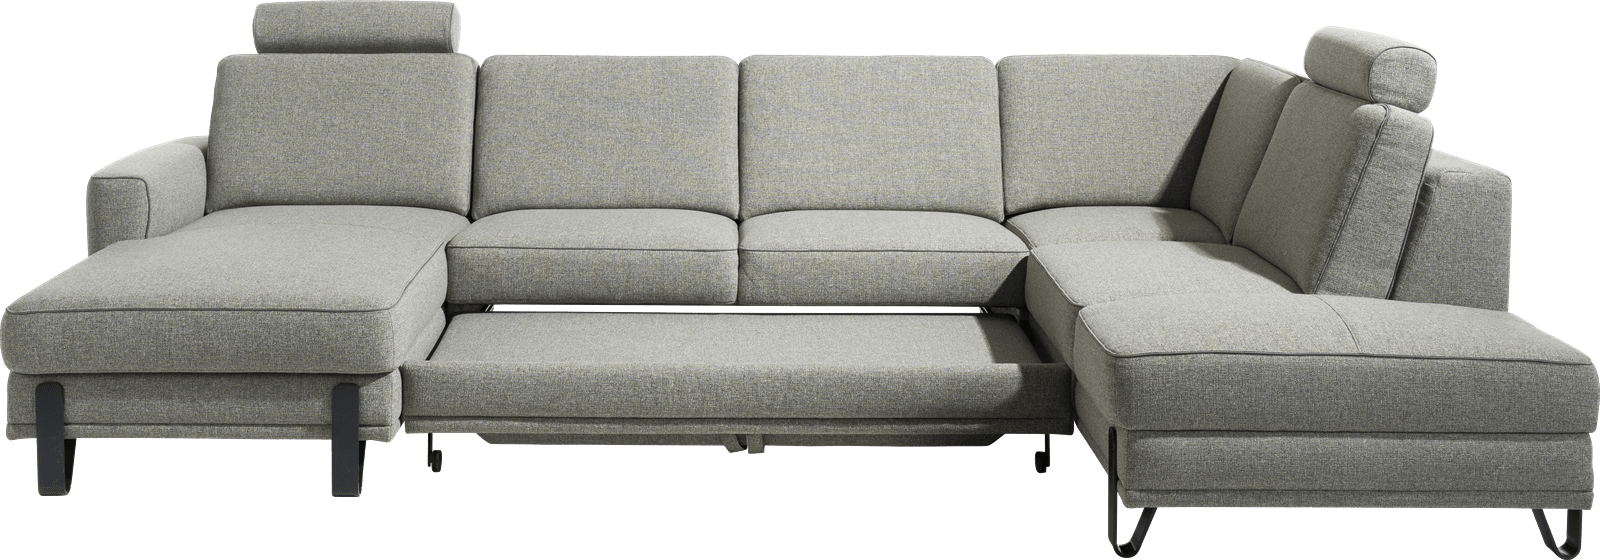 XOOON - Denver - Minimalistisches Design - Sofas - 2.5-Sitzer ohne Armlehnen